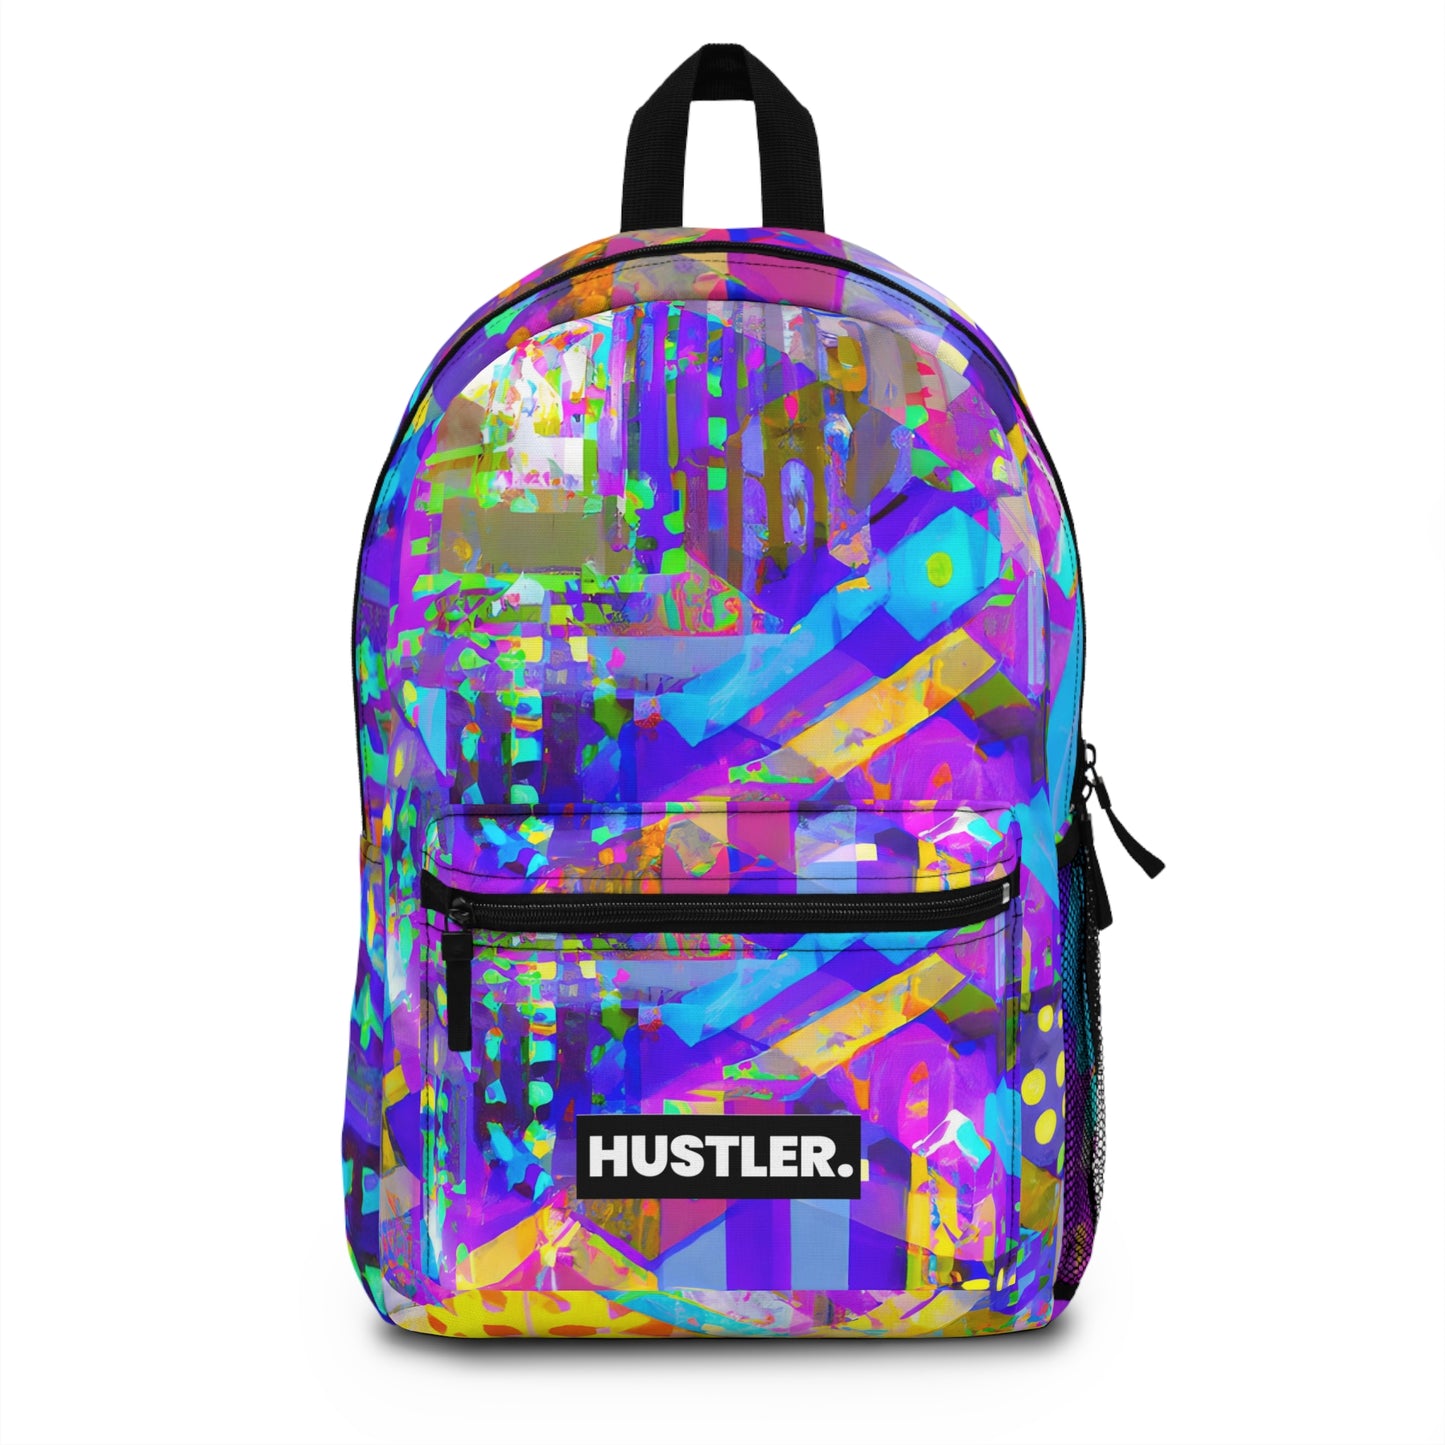 NeonMorph - Hustler Backpack